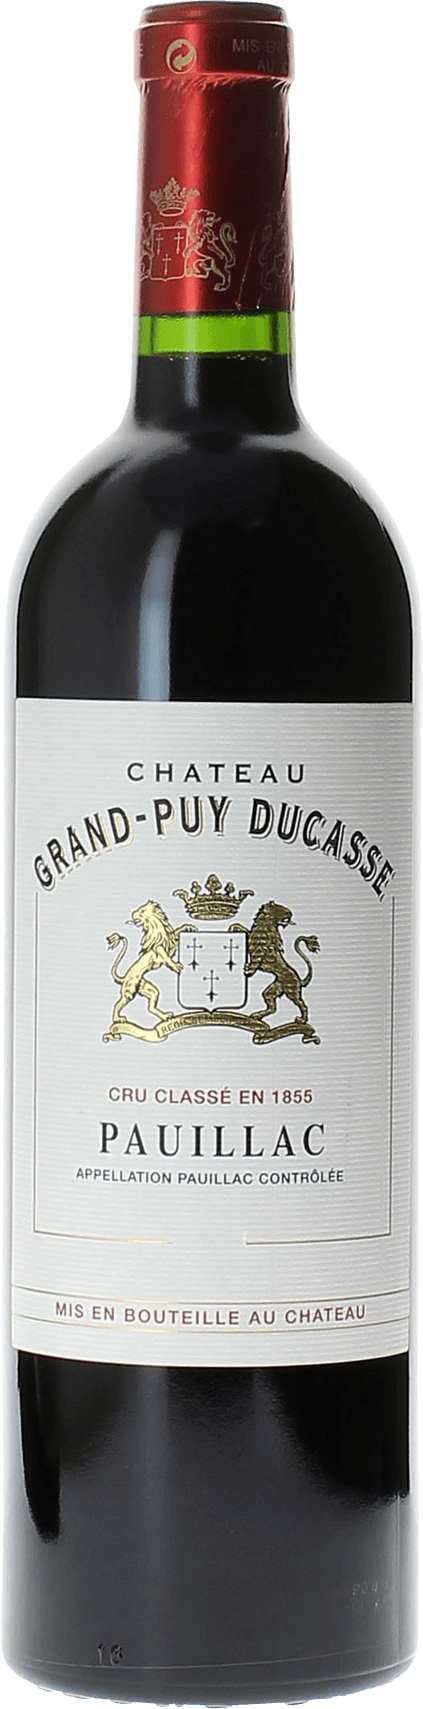 Grand puy ducasse 1986 5 me Grand cru class Pauillac, Bordeaux rouge